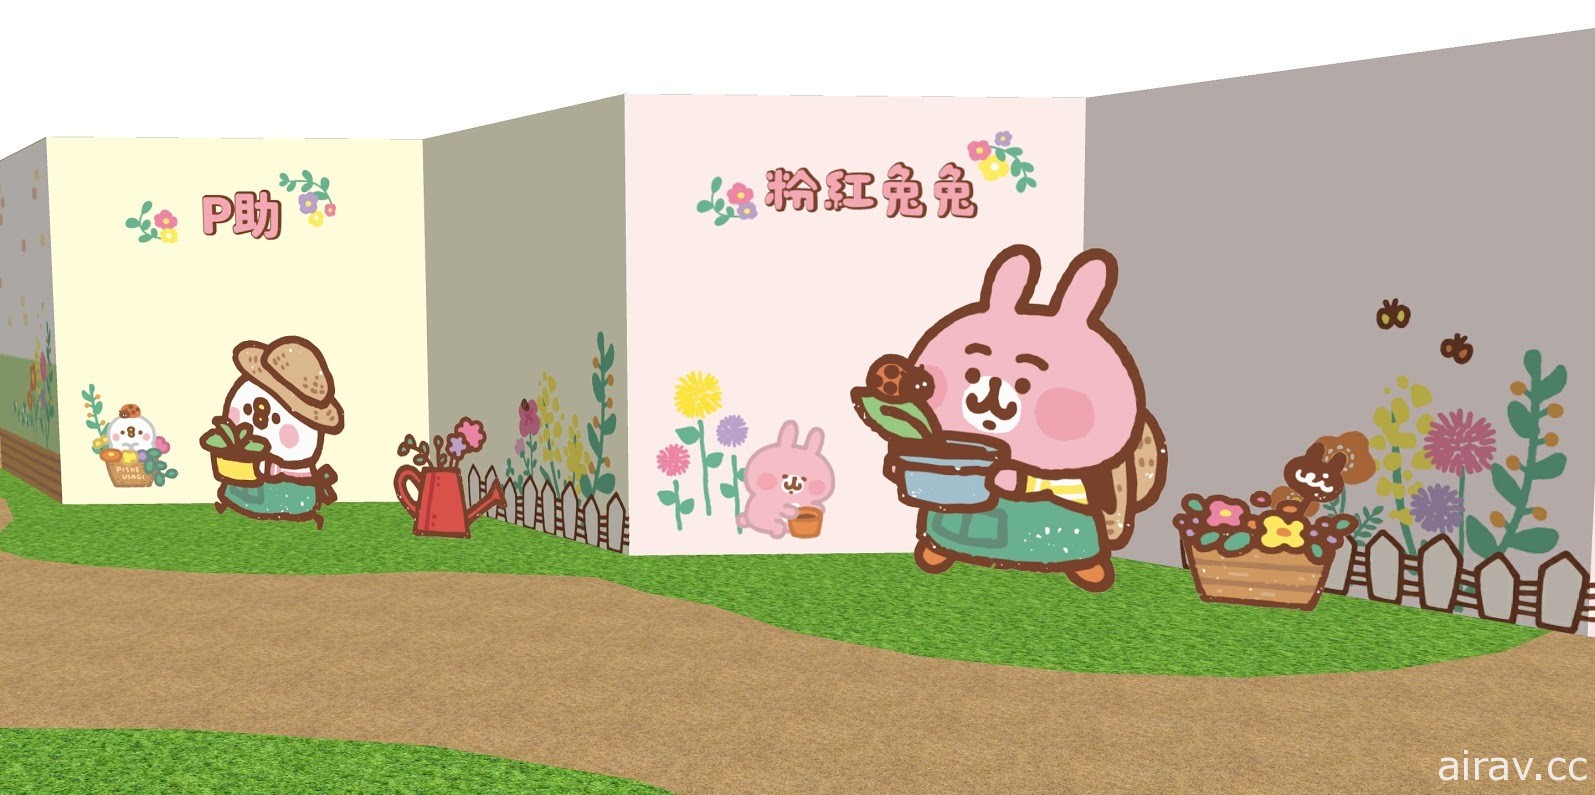 超萌小农回归《卡娜赫拉的小动物》小农系列主题店高雄台北 8/14 起陆续登场